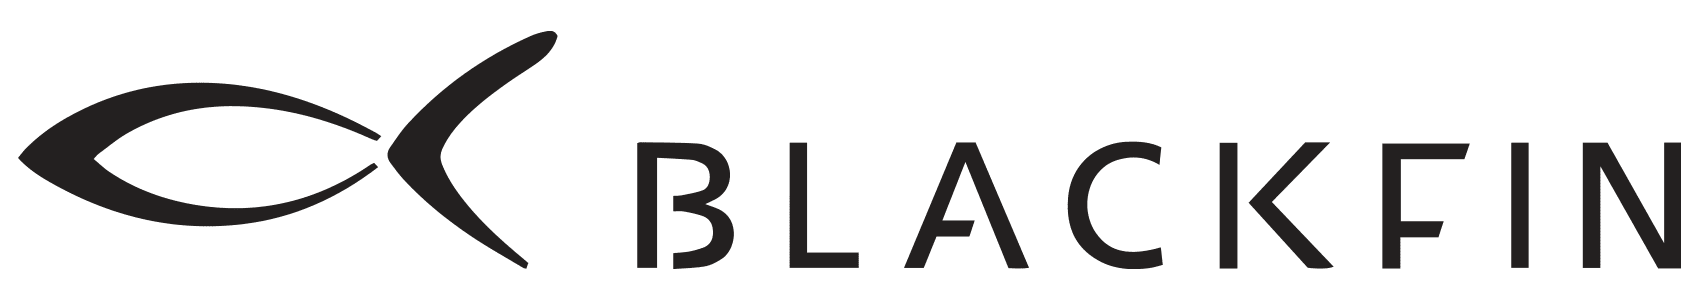 logo_blackfin